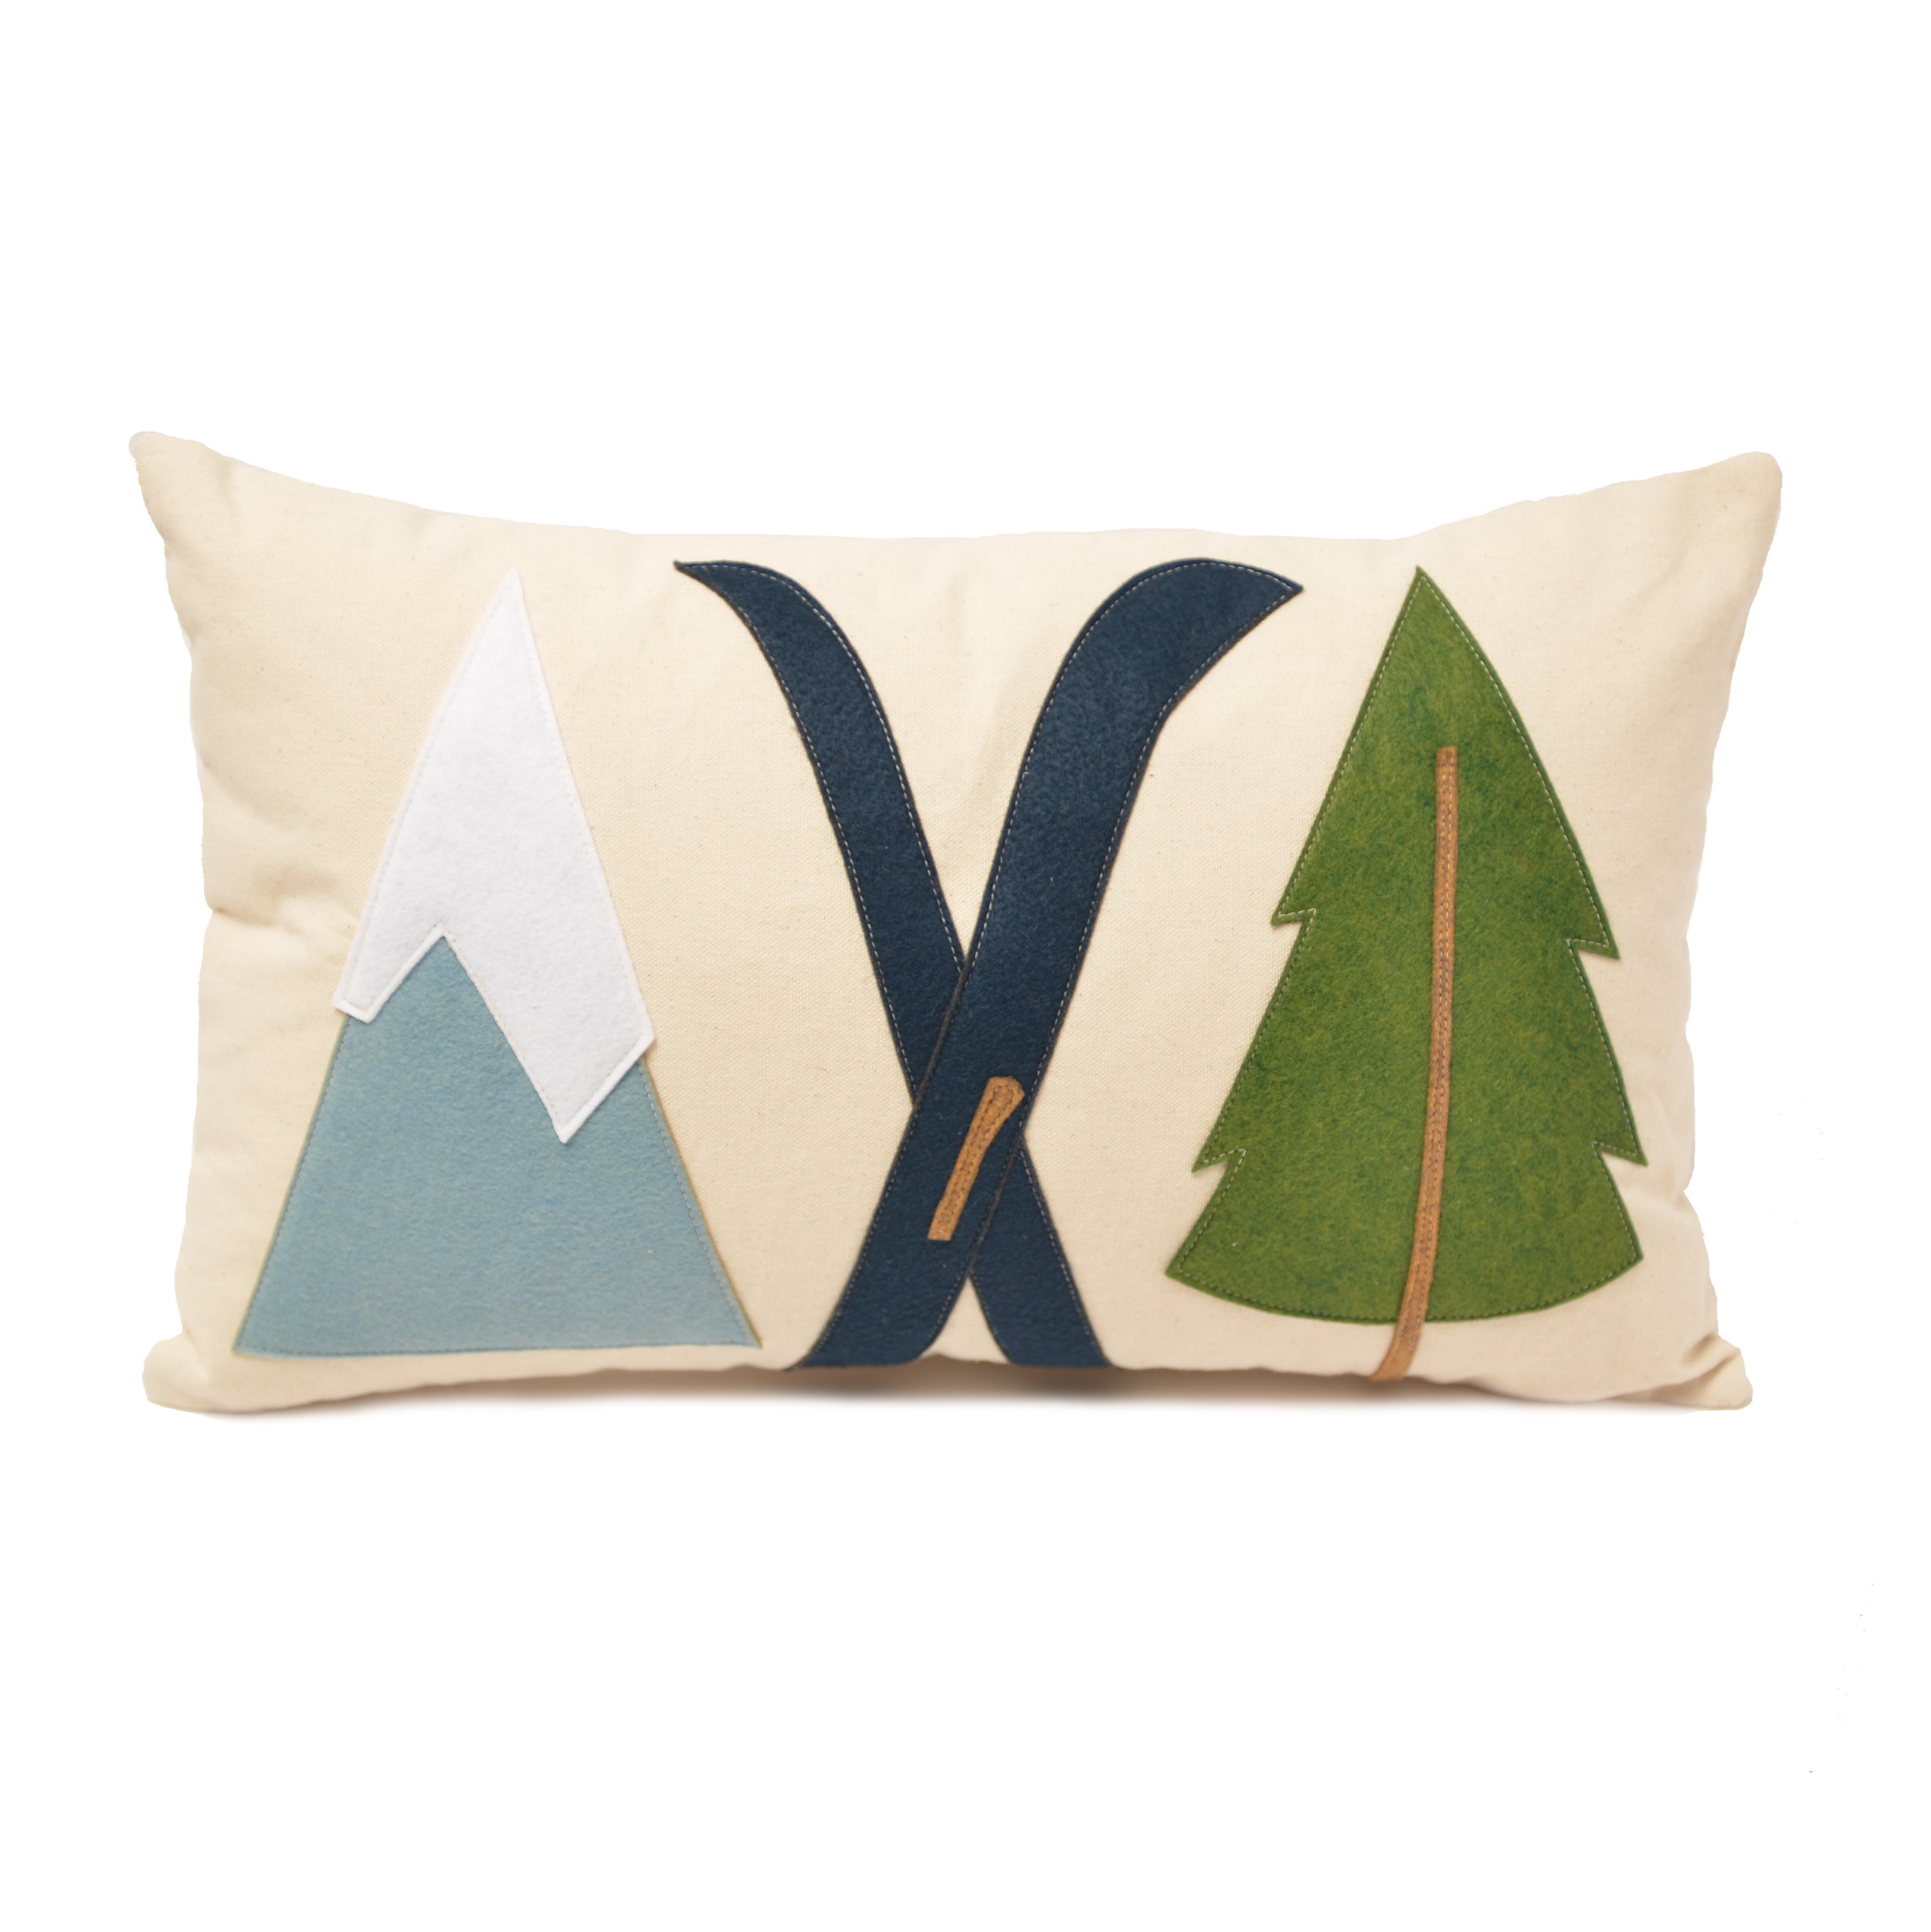 Mountain Ski + Tree lumbar pillow